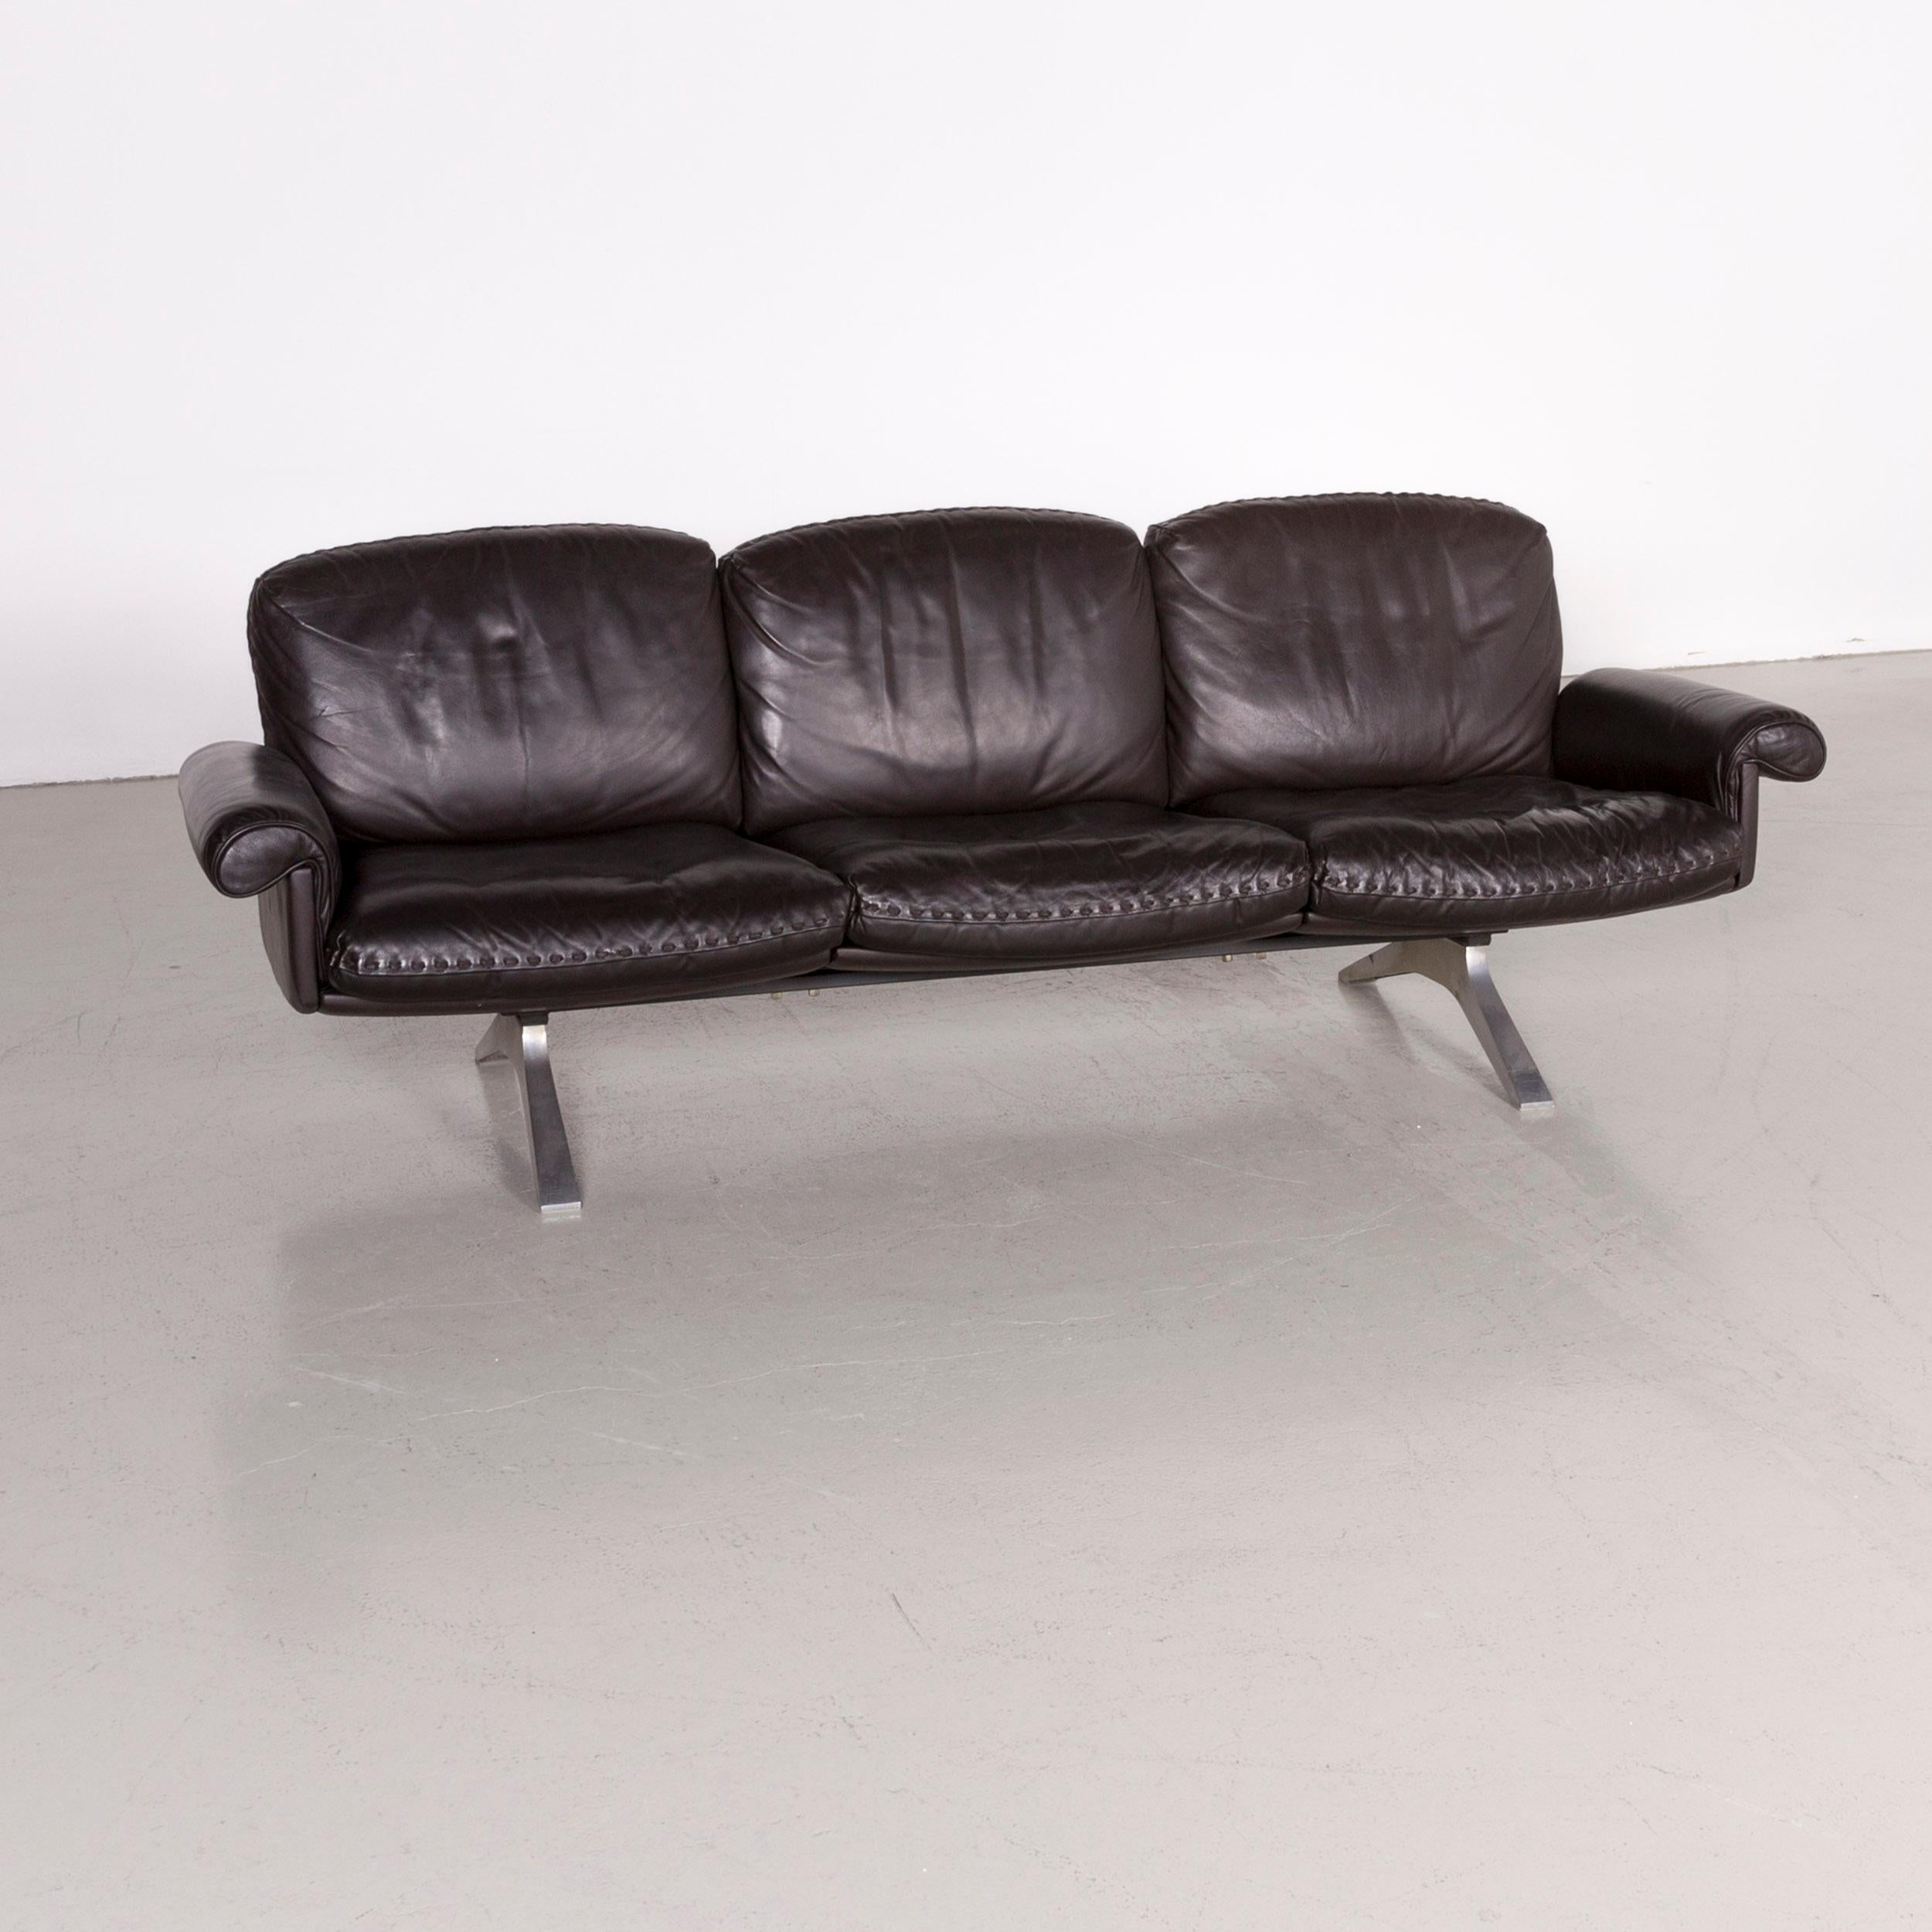 De Sede designer Ds 31 designer leather sofa brown three-seat couch.